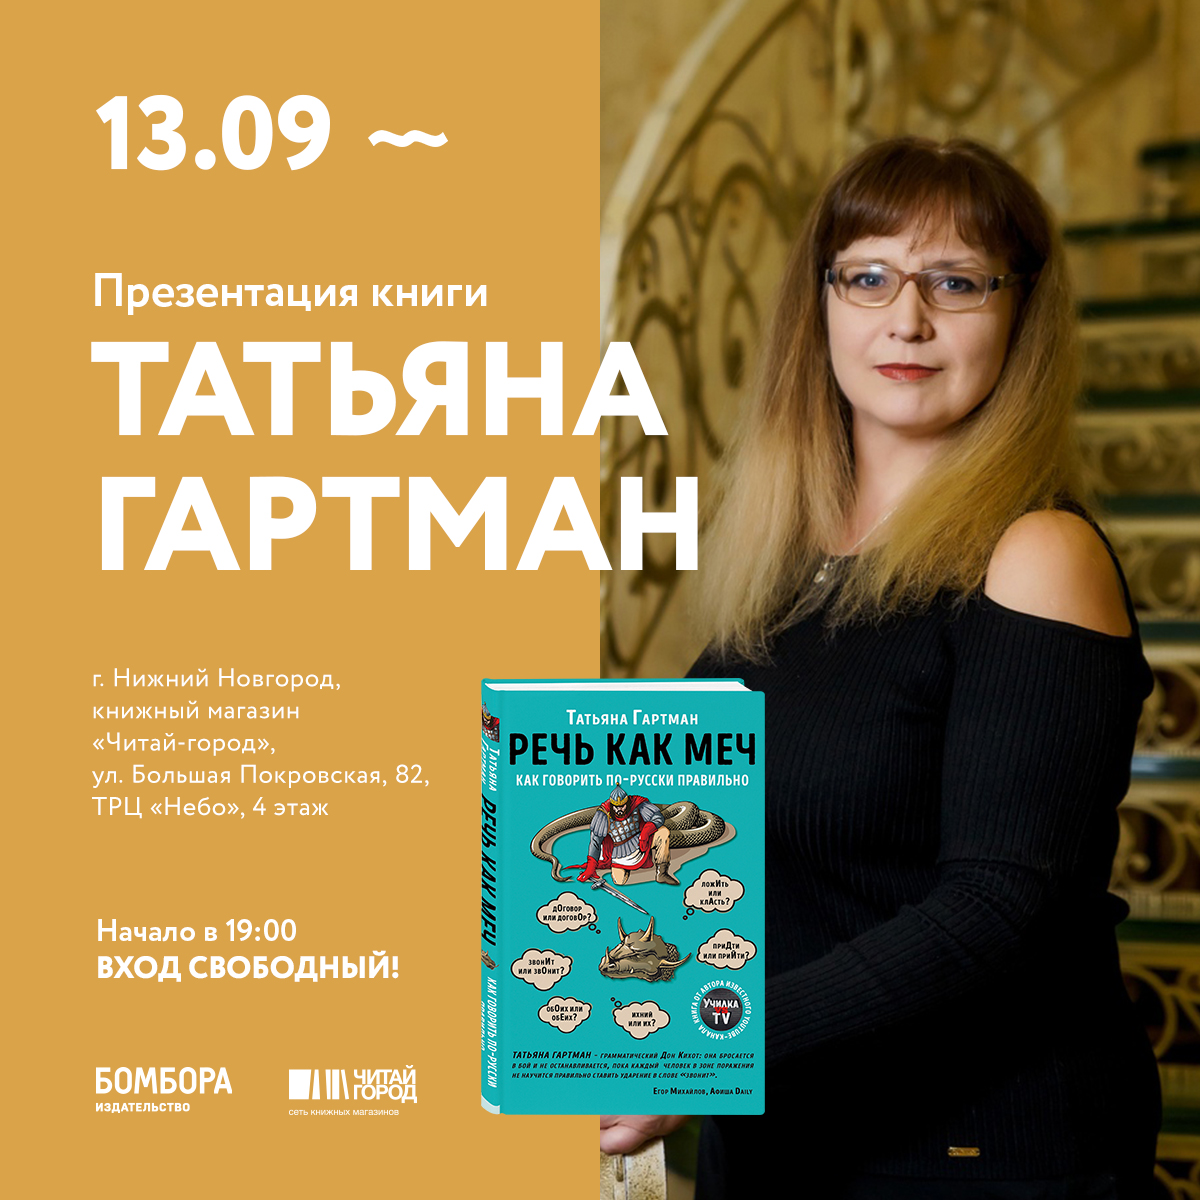 Презентация книги youtube-«училки» Татьяны Гартман состоится в Нижнем Новгороде